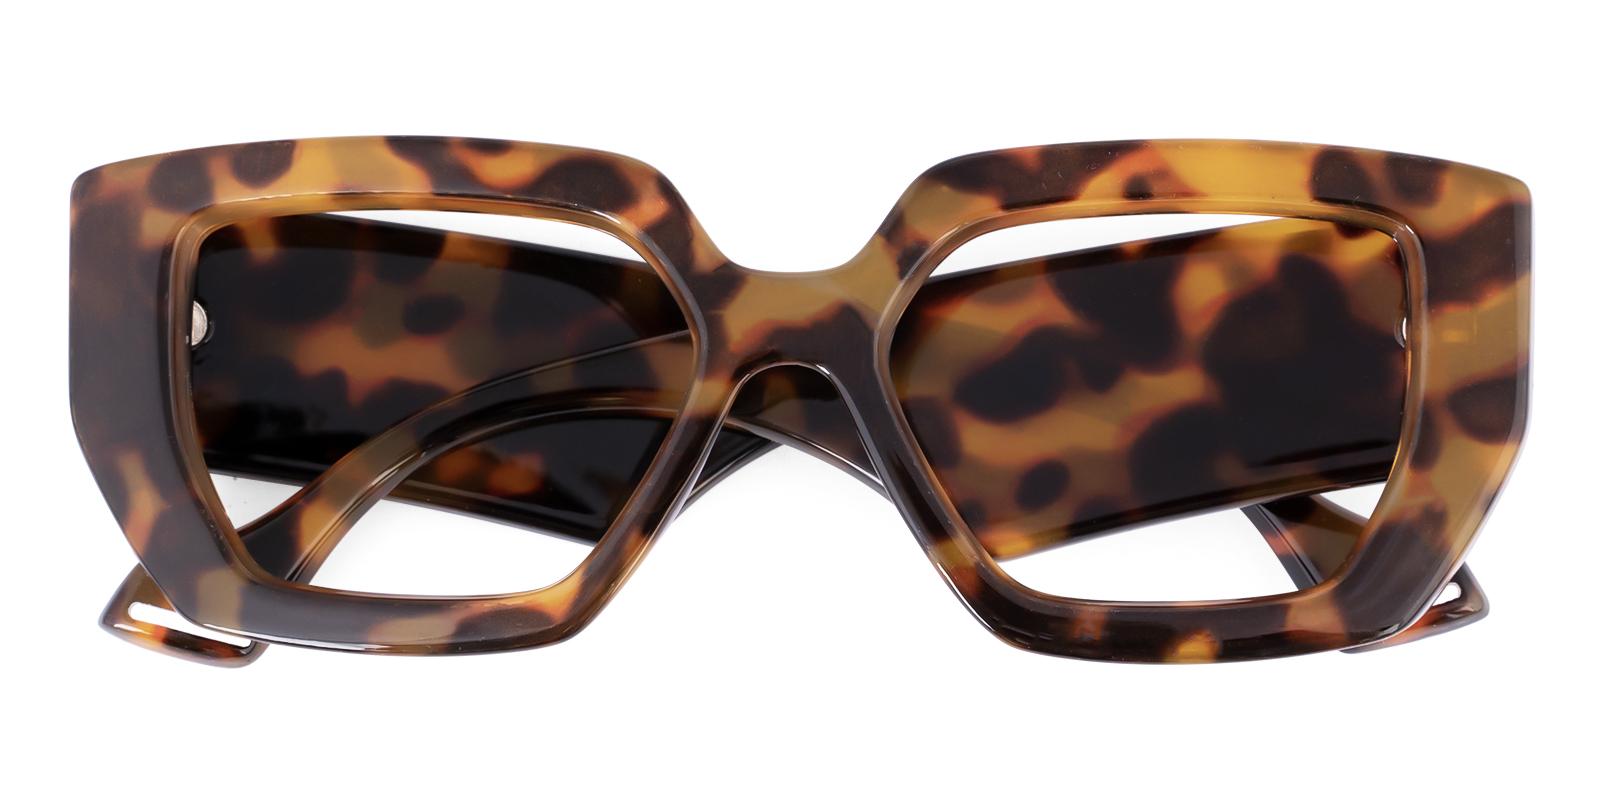 Signosity Tortoise Acetate Eyeglasses , UniversalBridgeFit Frames from ABBE Glasses